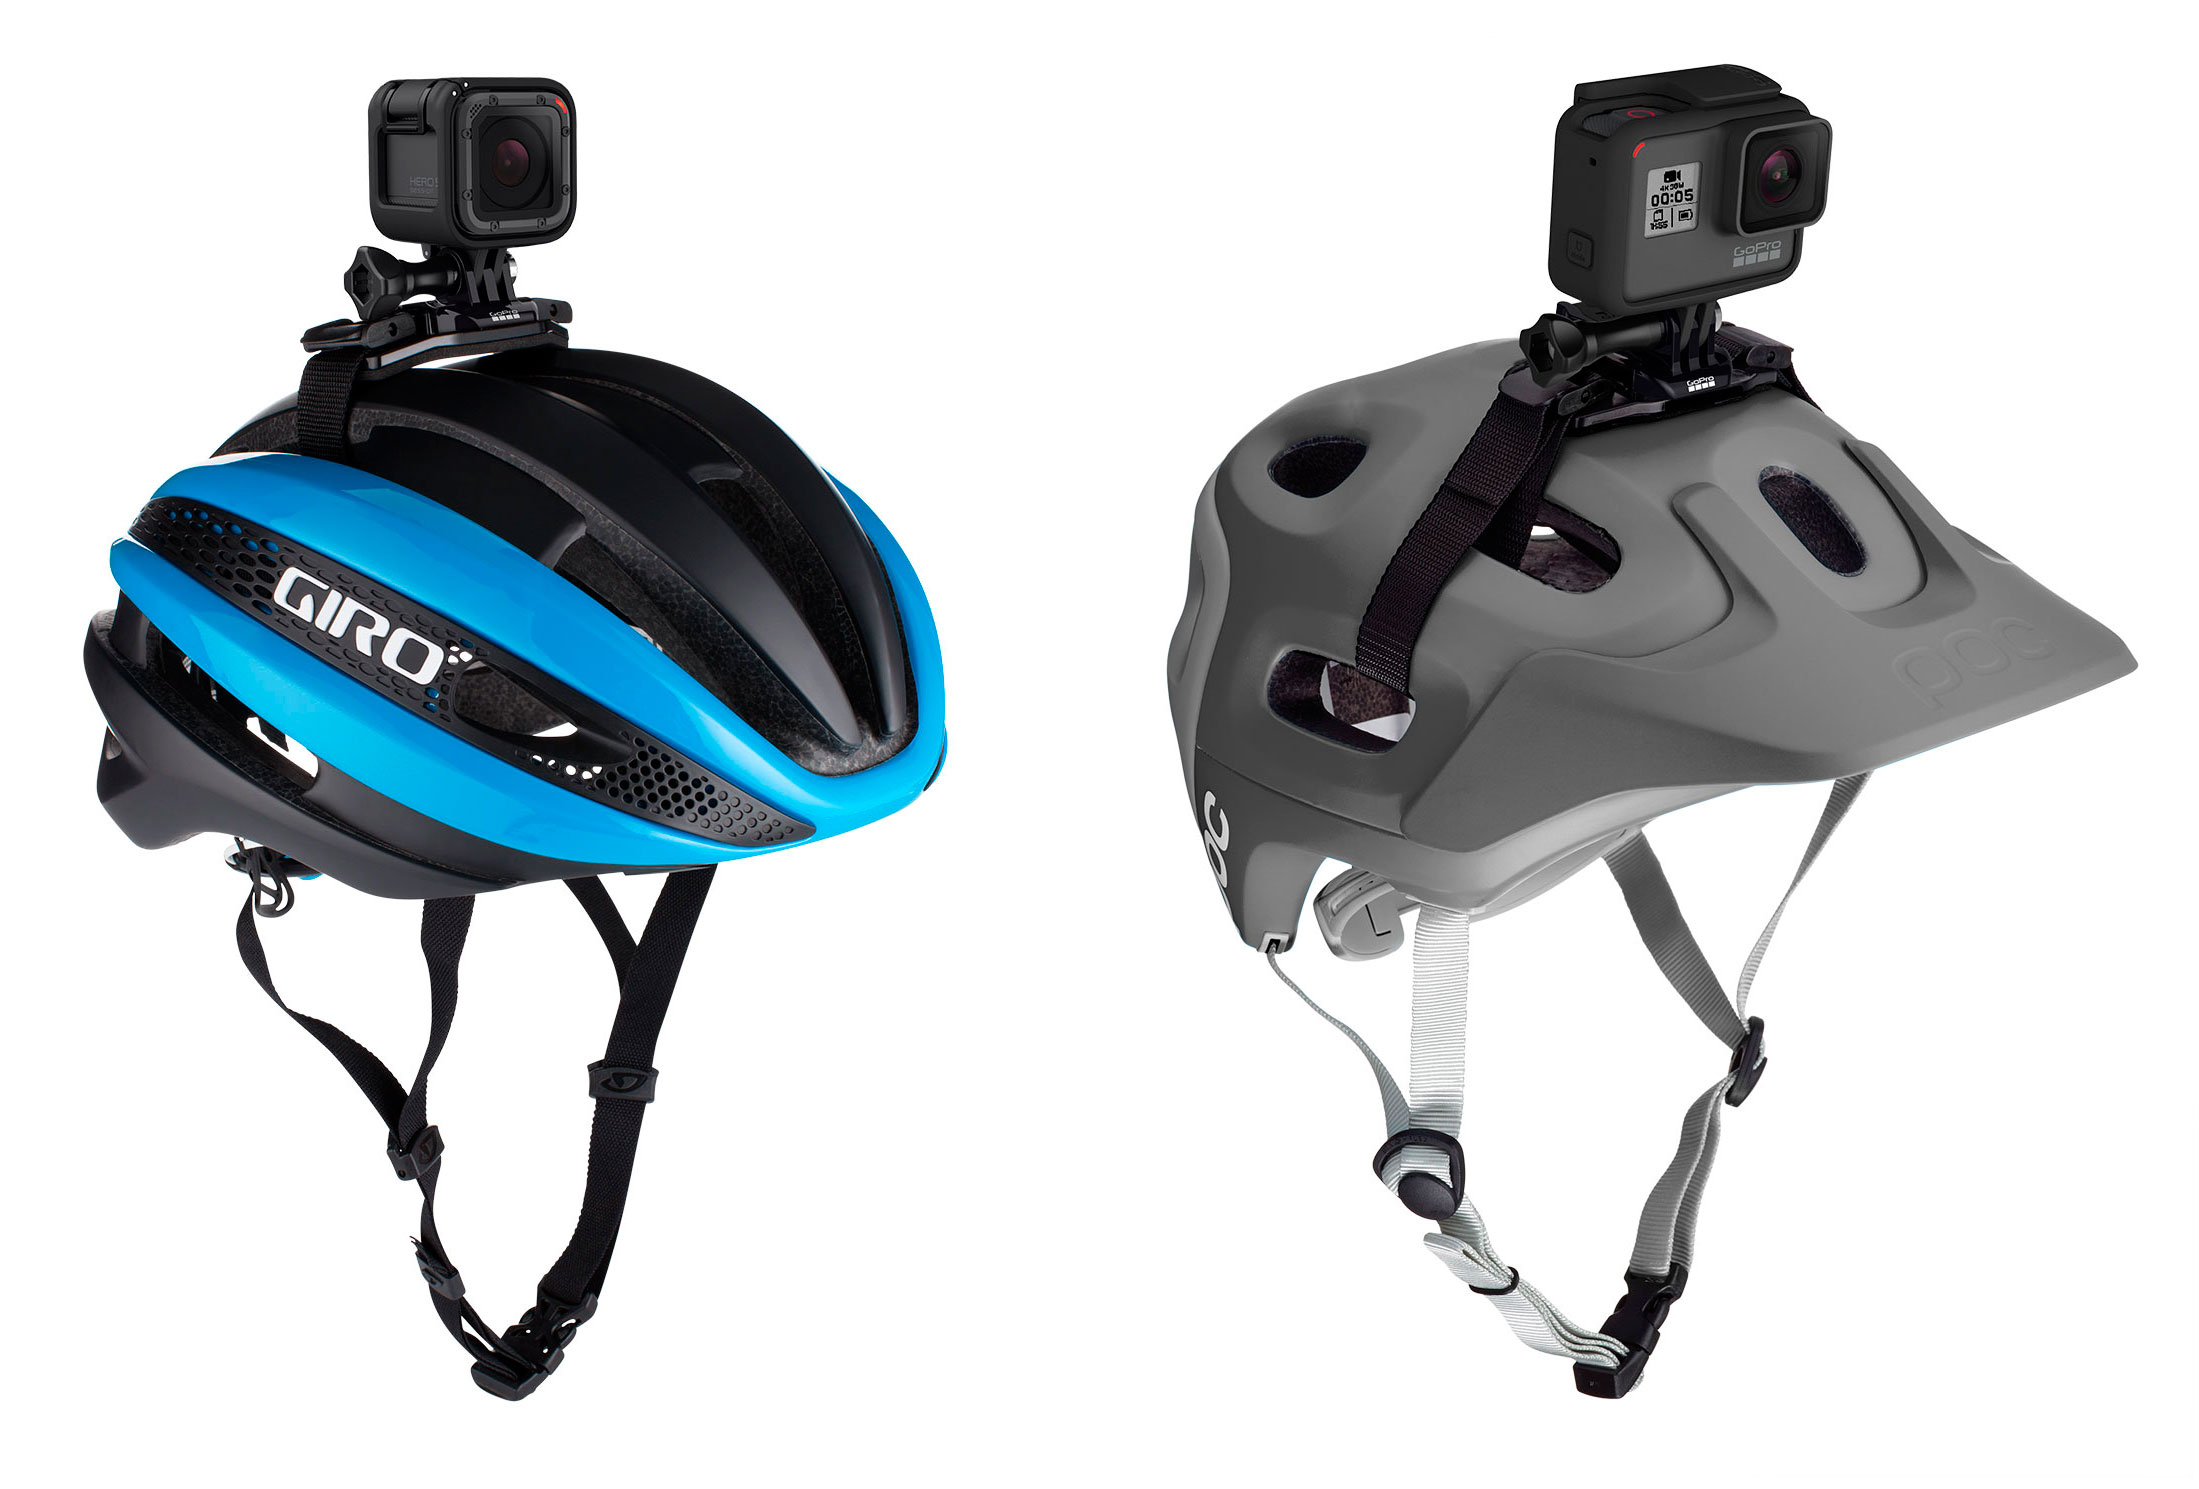 Крепление на шлем GoPro Vented Helmet Strap Mount